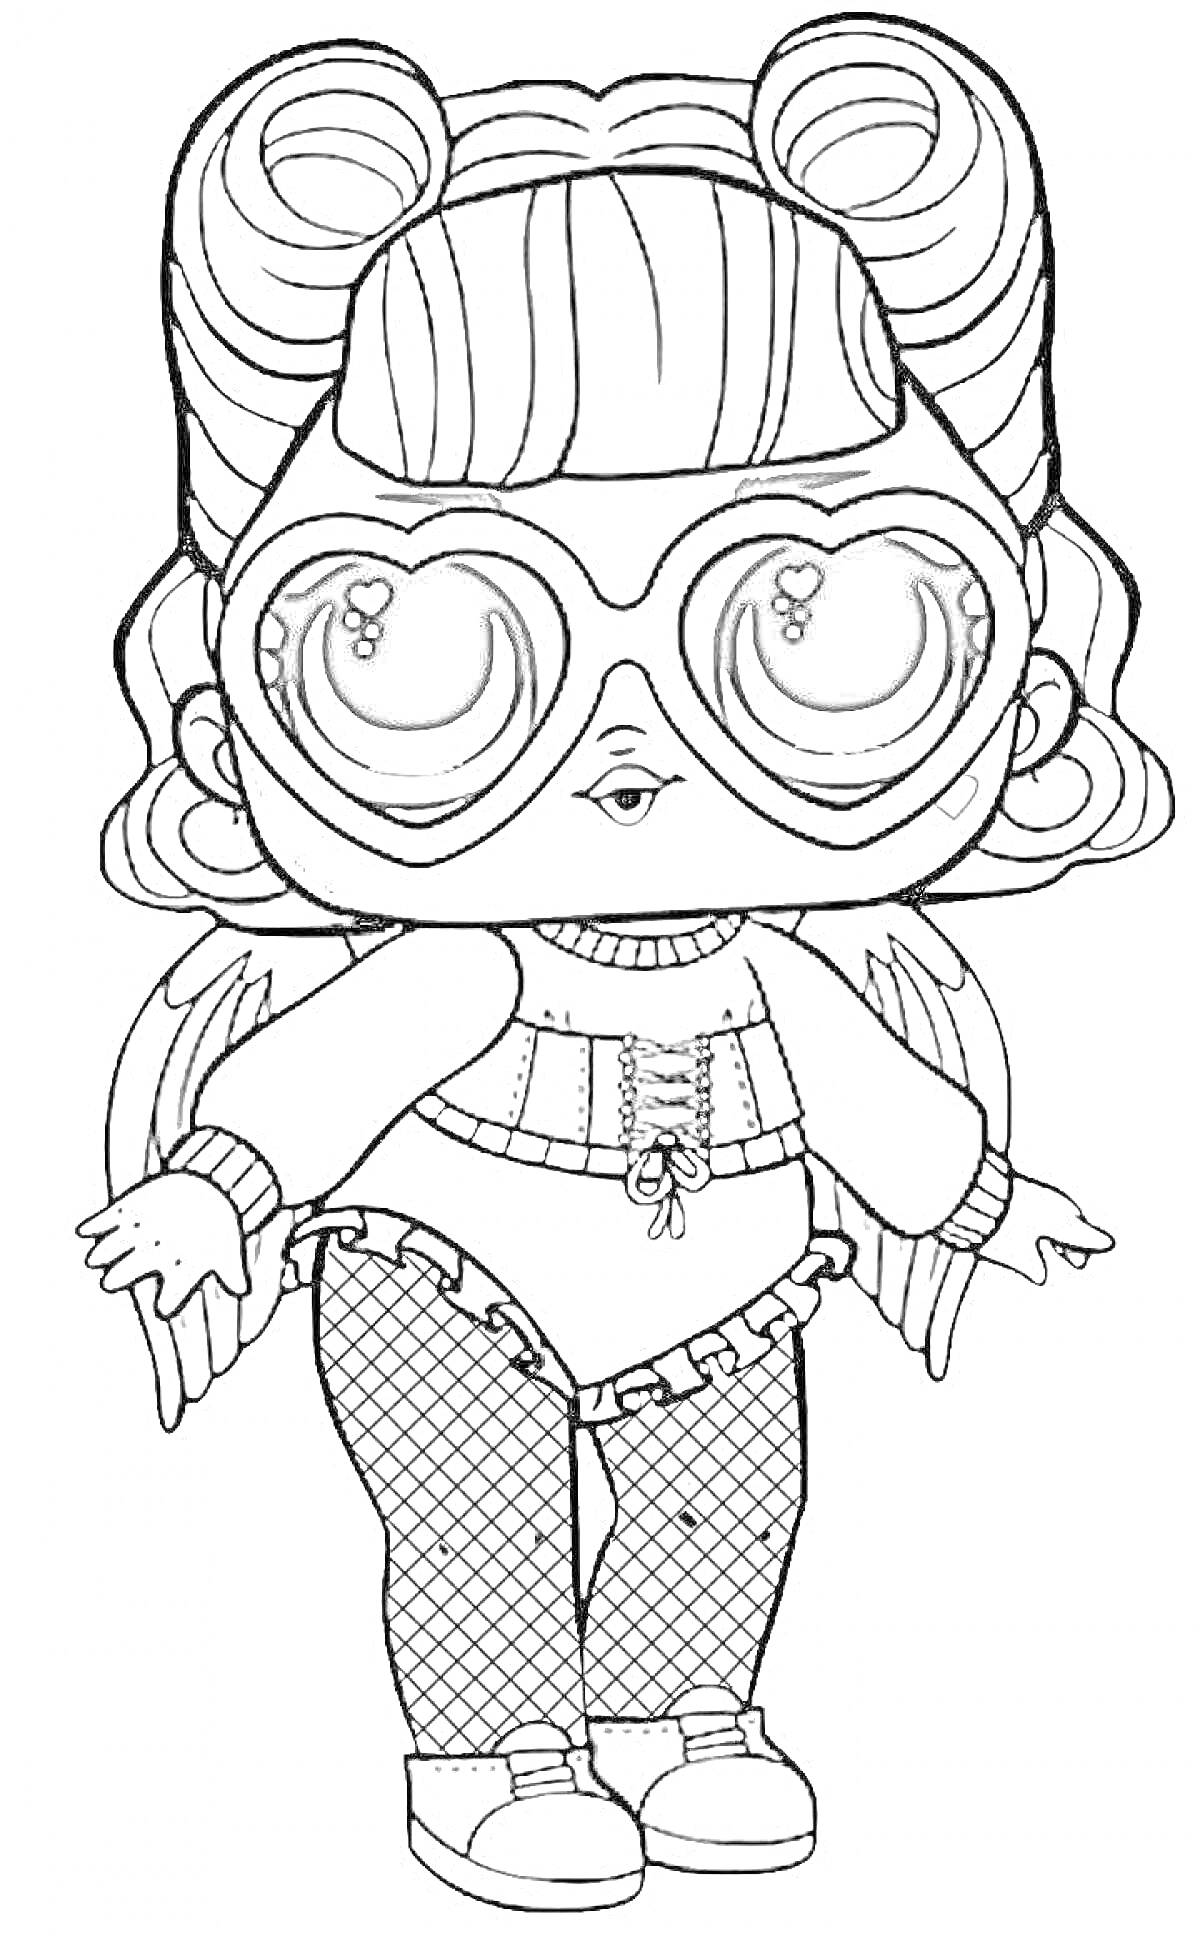 Раскраска Кукла ЛОЛ с большими глазами в очках, с крыльями и в костюме с шортами и колготками